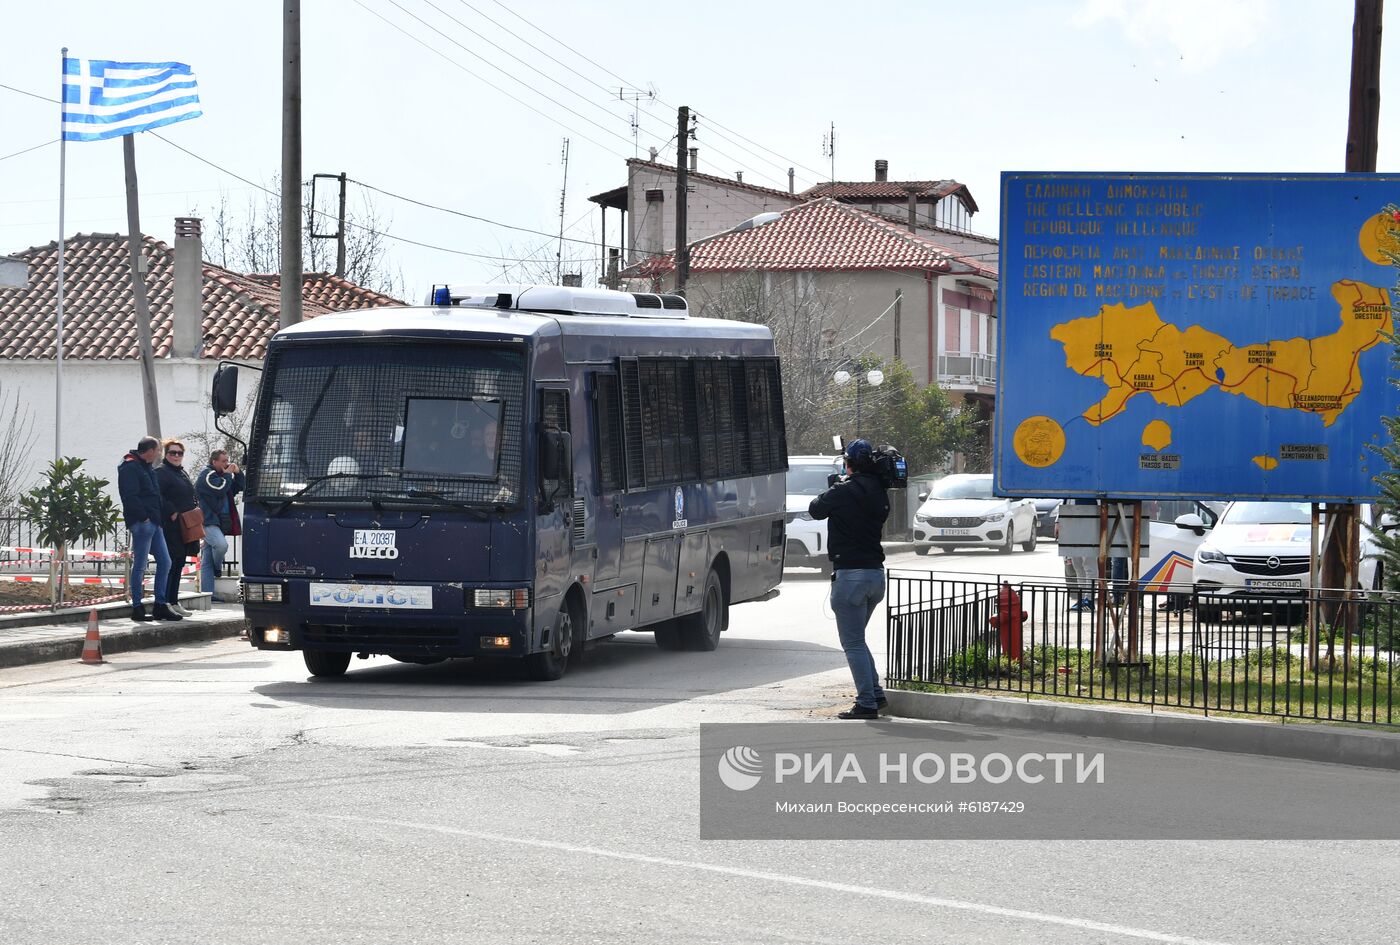 Усиление мер безопаснсоти на границе Греции с Турцией